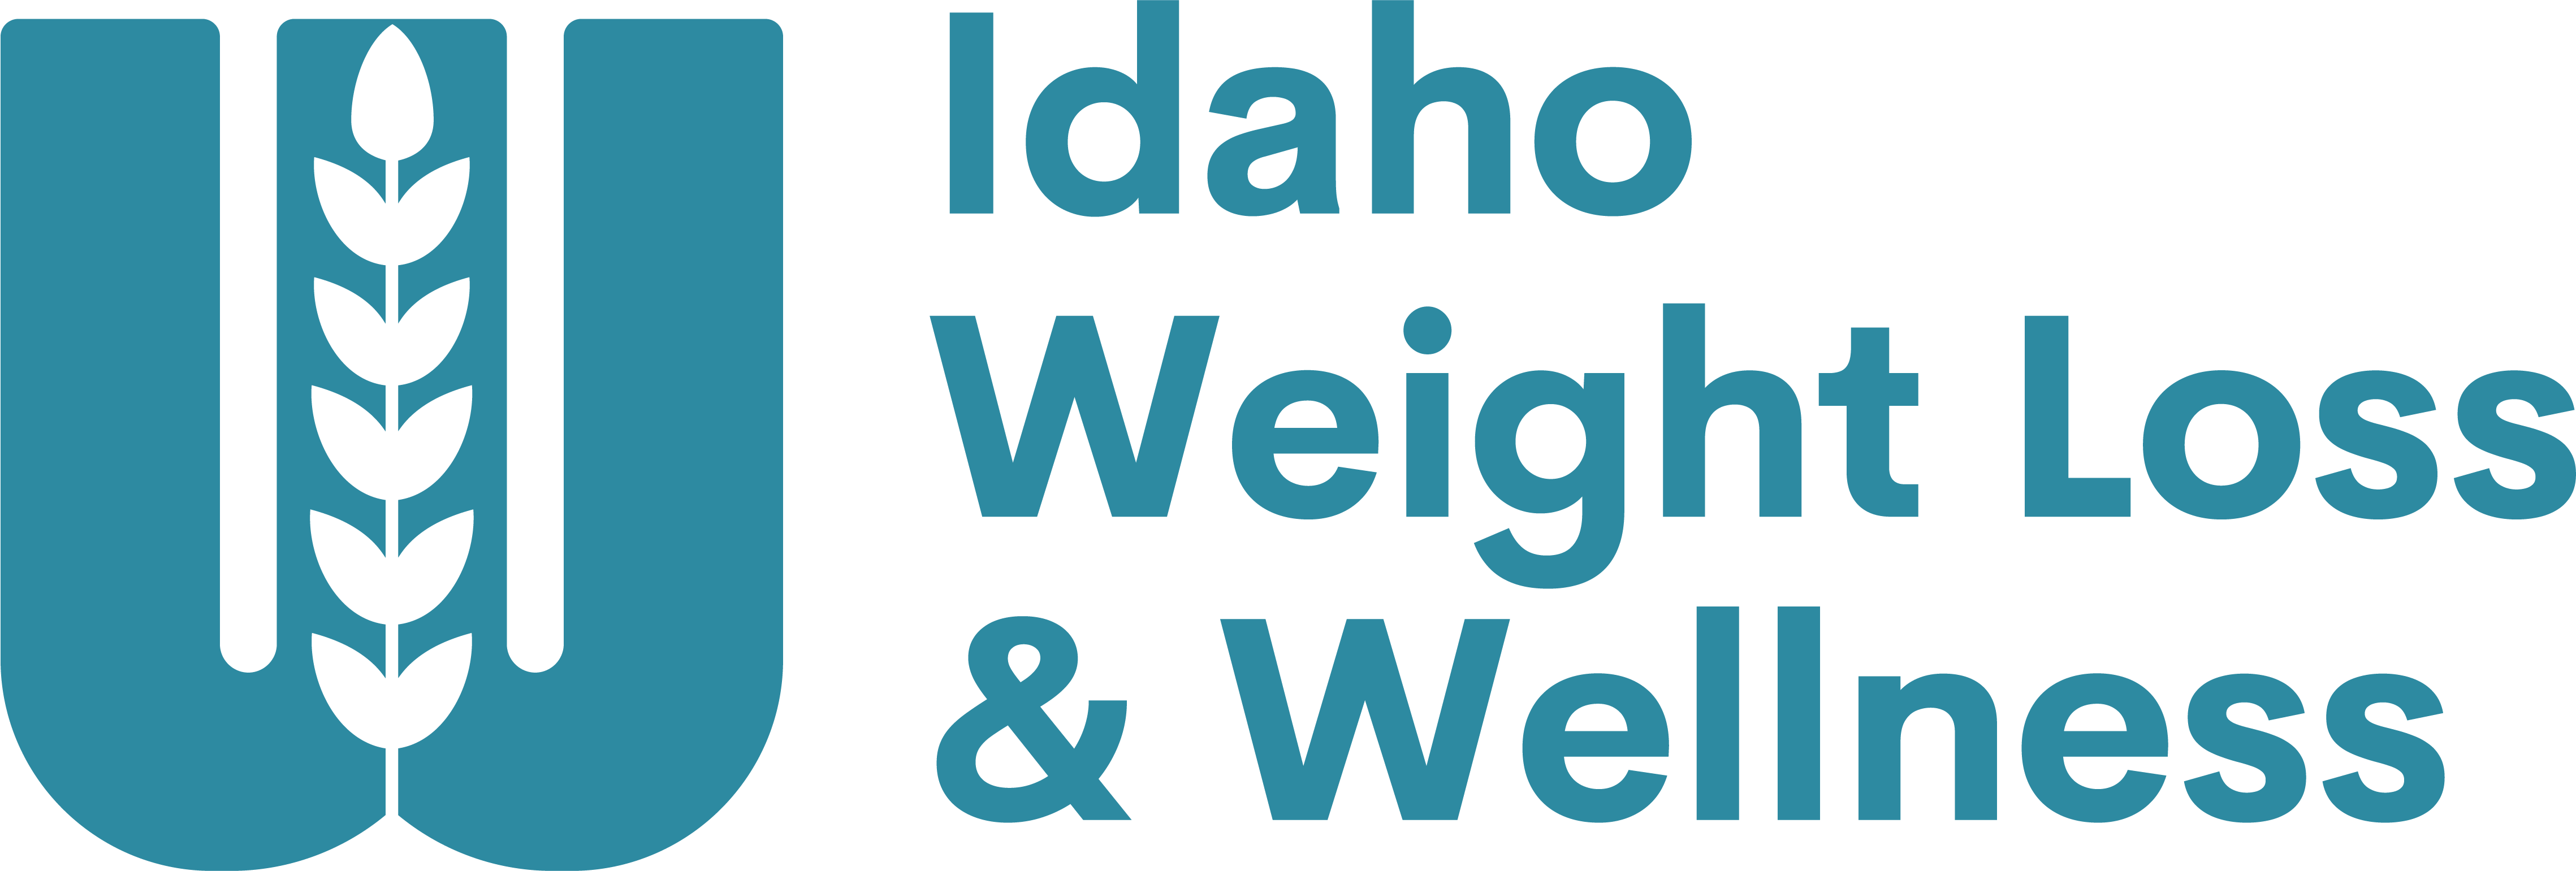 Idaho Weight Loss & Wellness